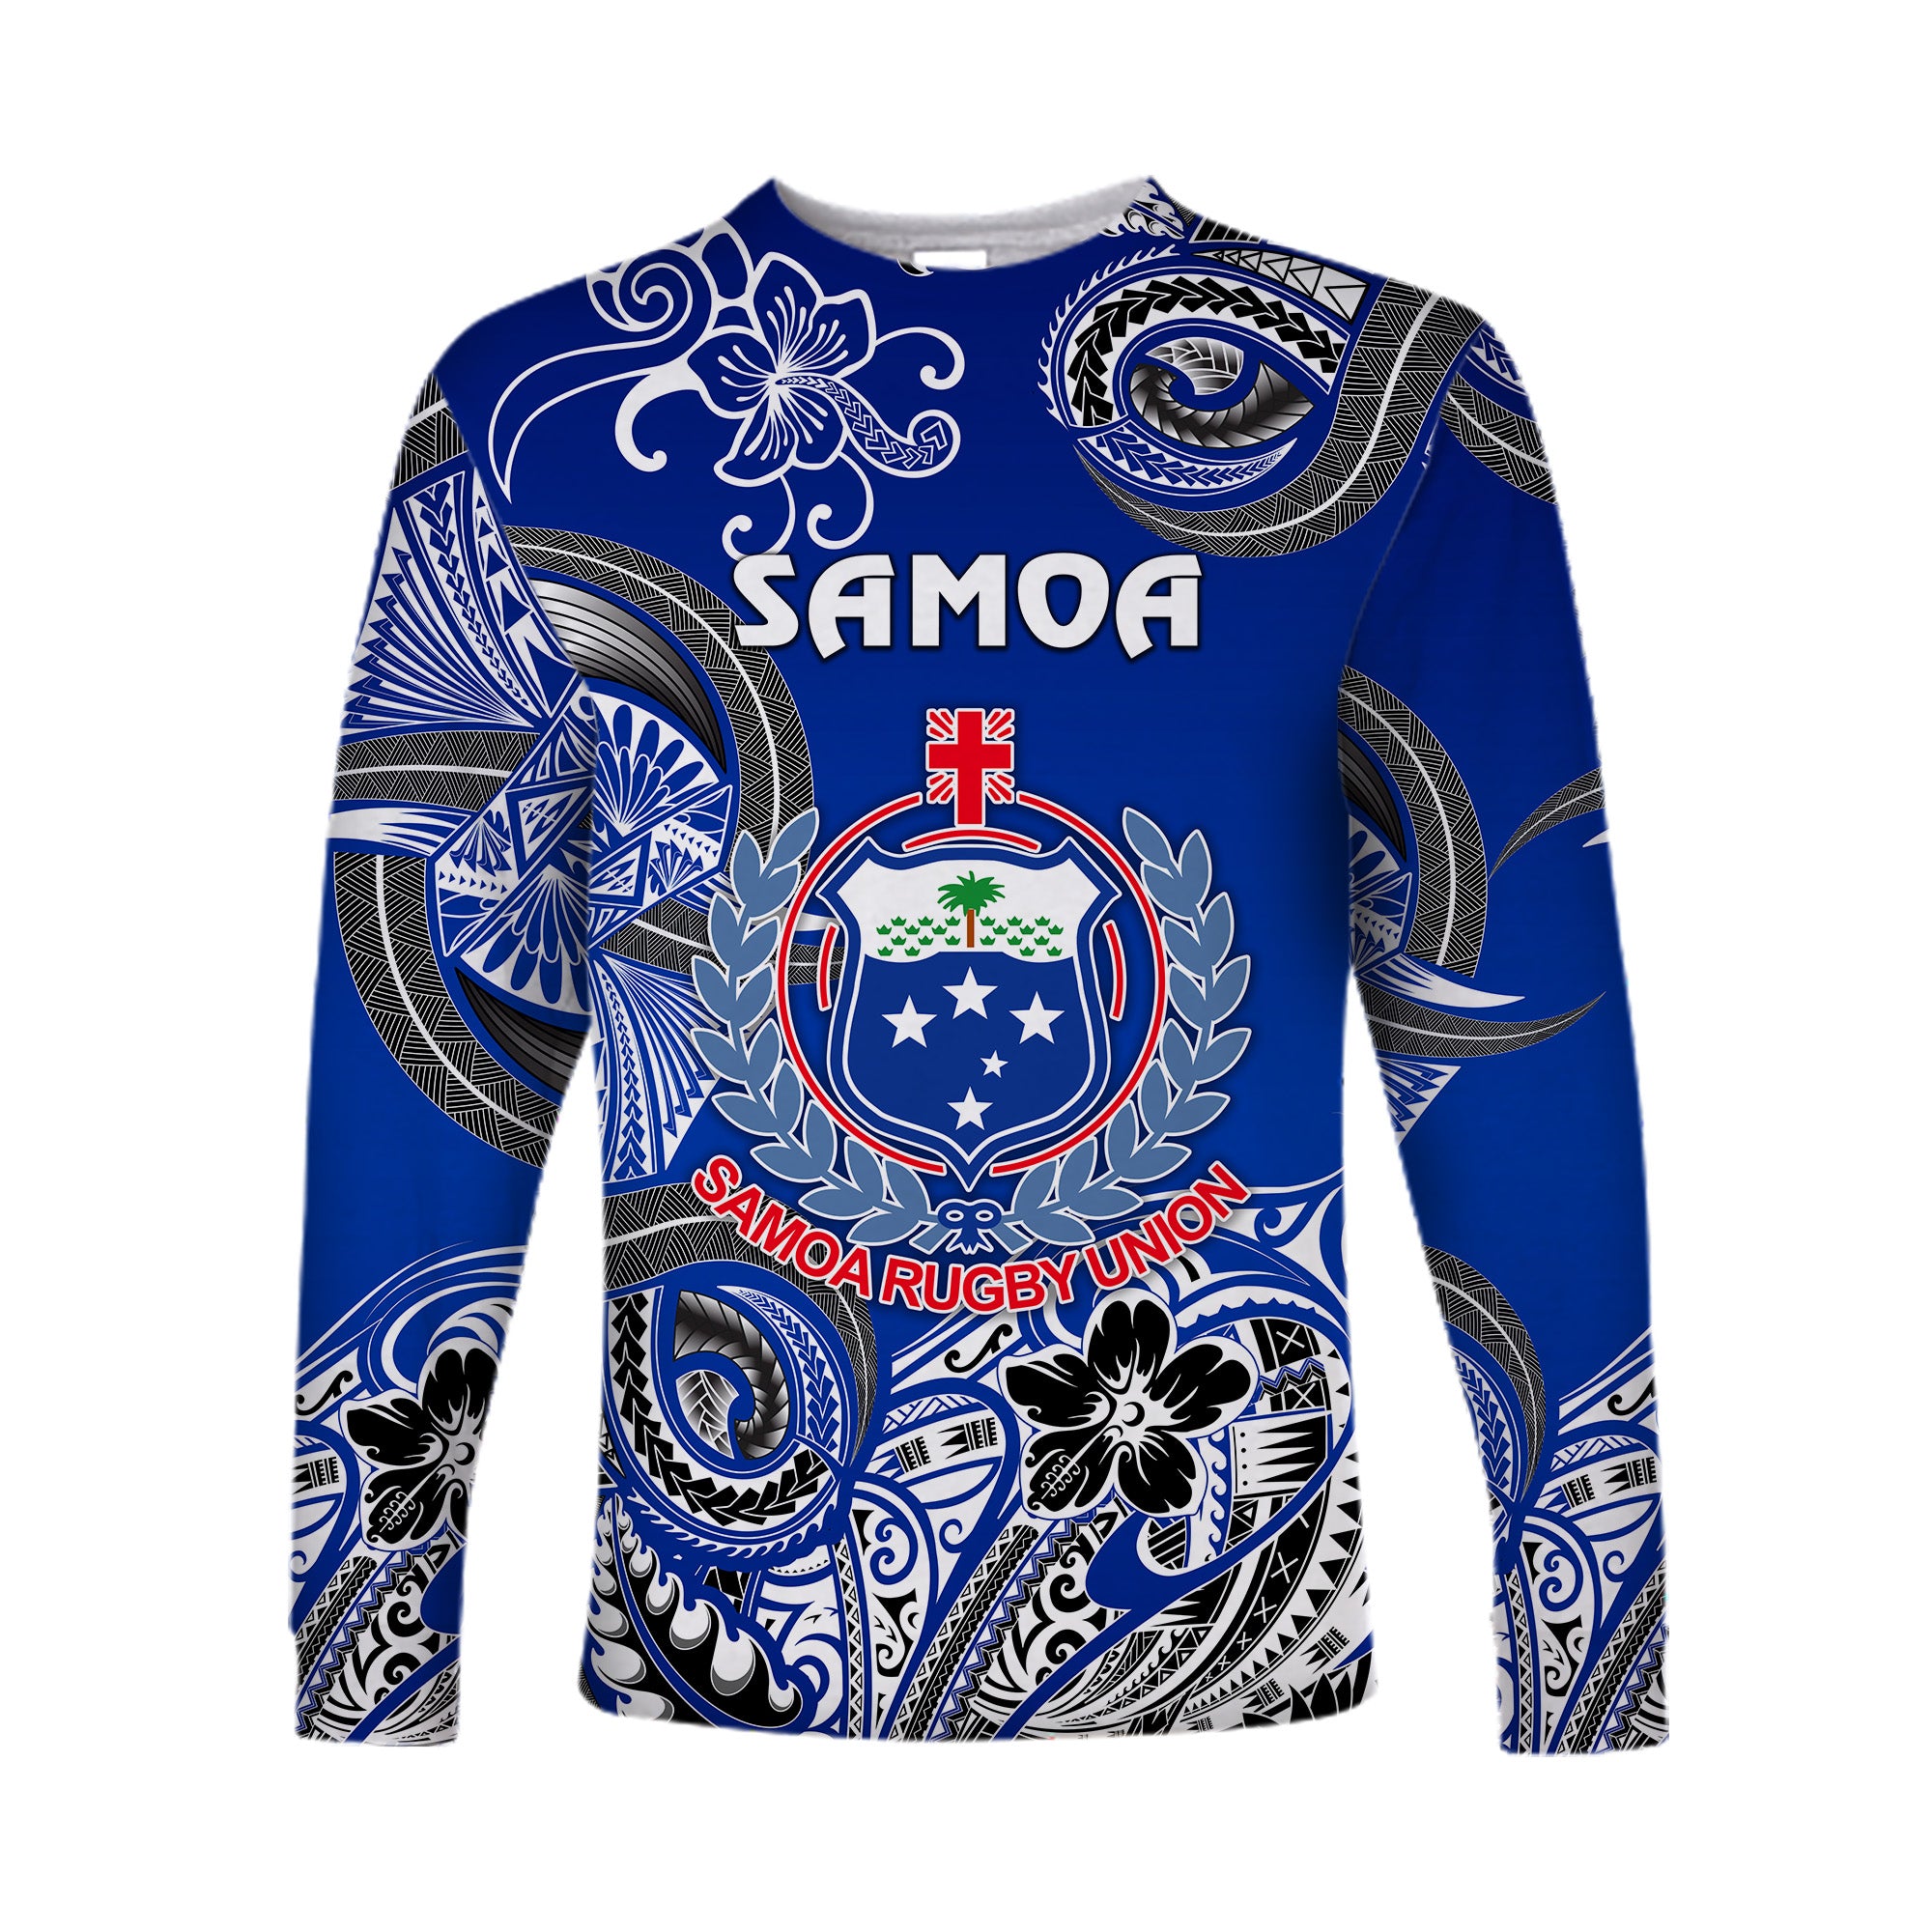 (Custom Personalised) Samoa Manu Long Sleeve Shirt Rugby Unique Style - Blue White LT8 Unisex Blue - Polynesian Pride